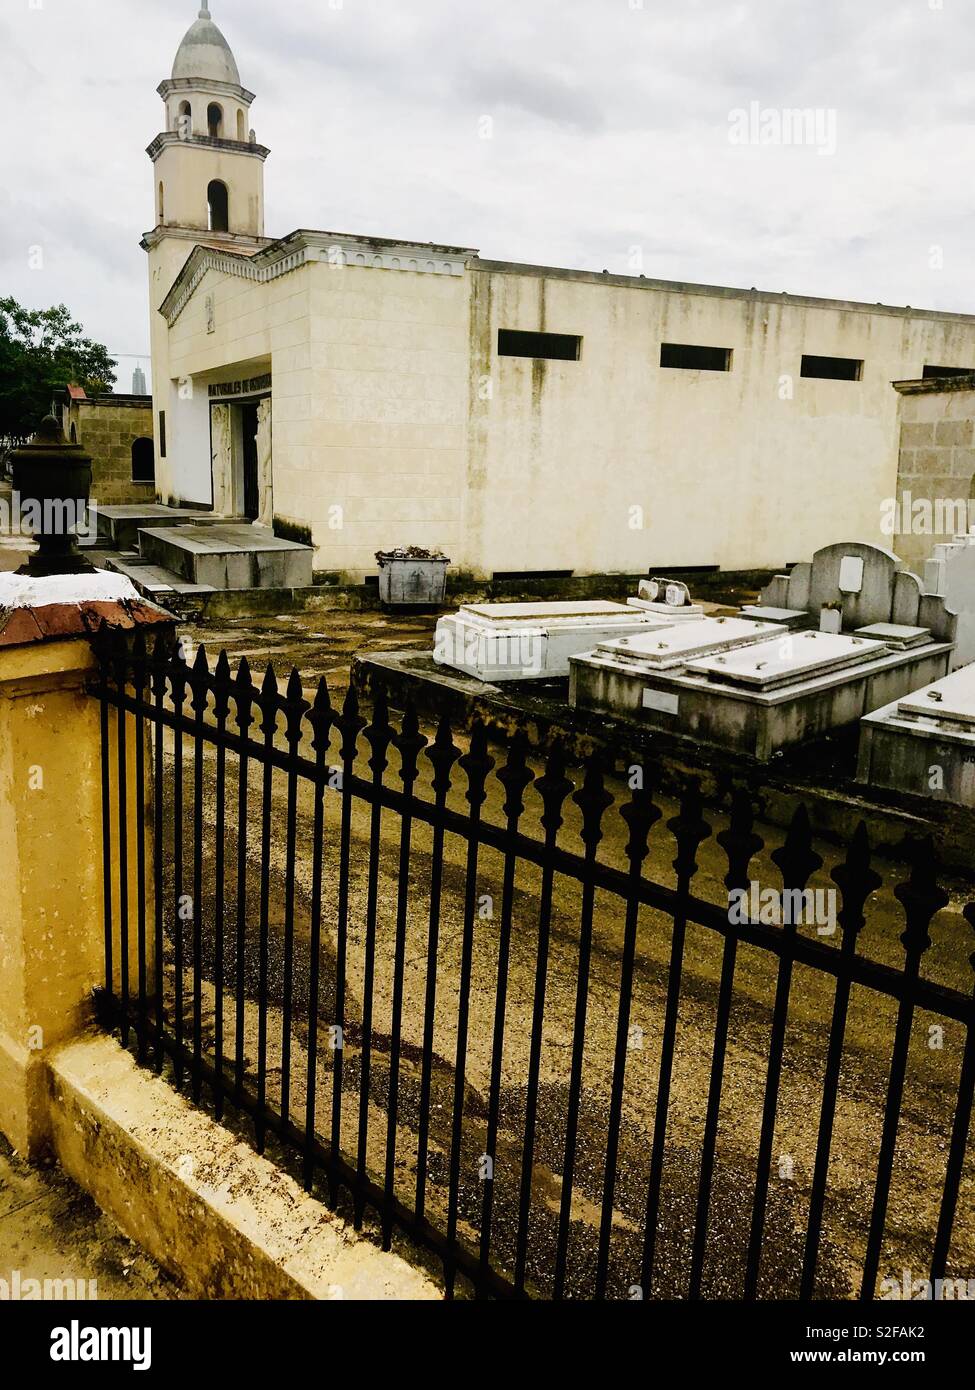 Cimitero di Colon è uno dei più importanti cimiteri in tutto il mondo ed è uno dei più importanti in America Latina nella storica e architettura, Colon è un cimitero cattolico. Foto Stock